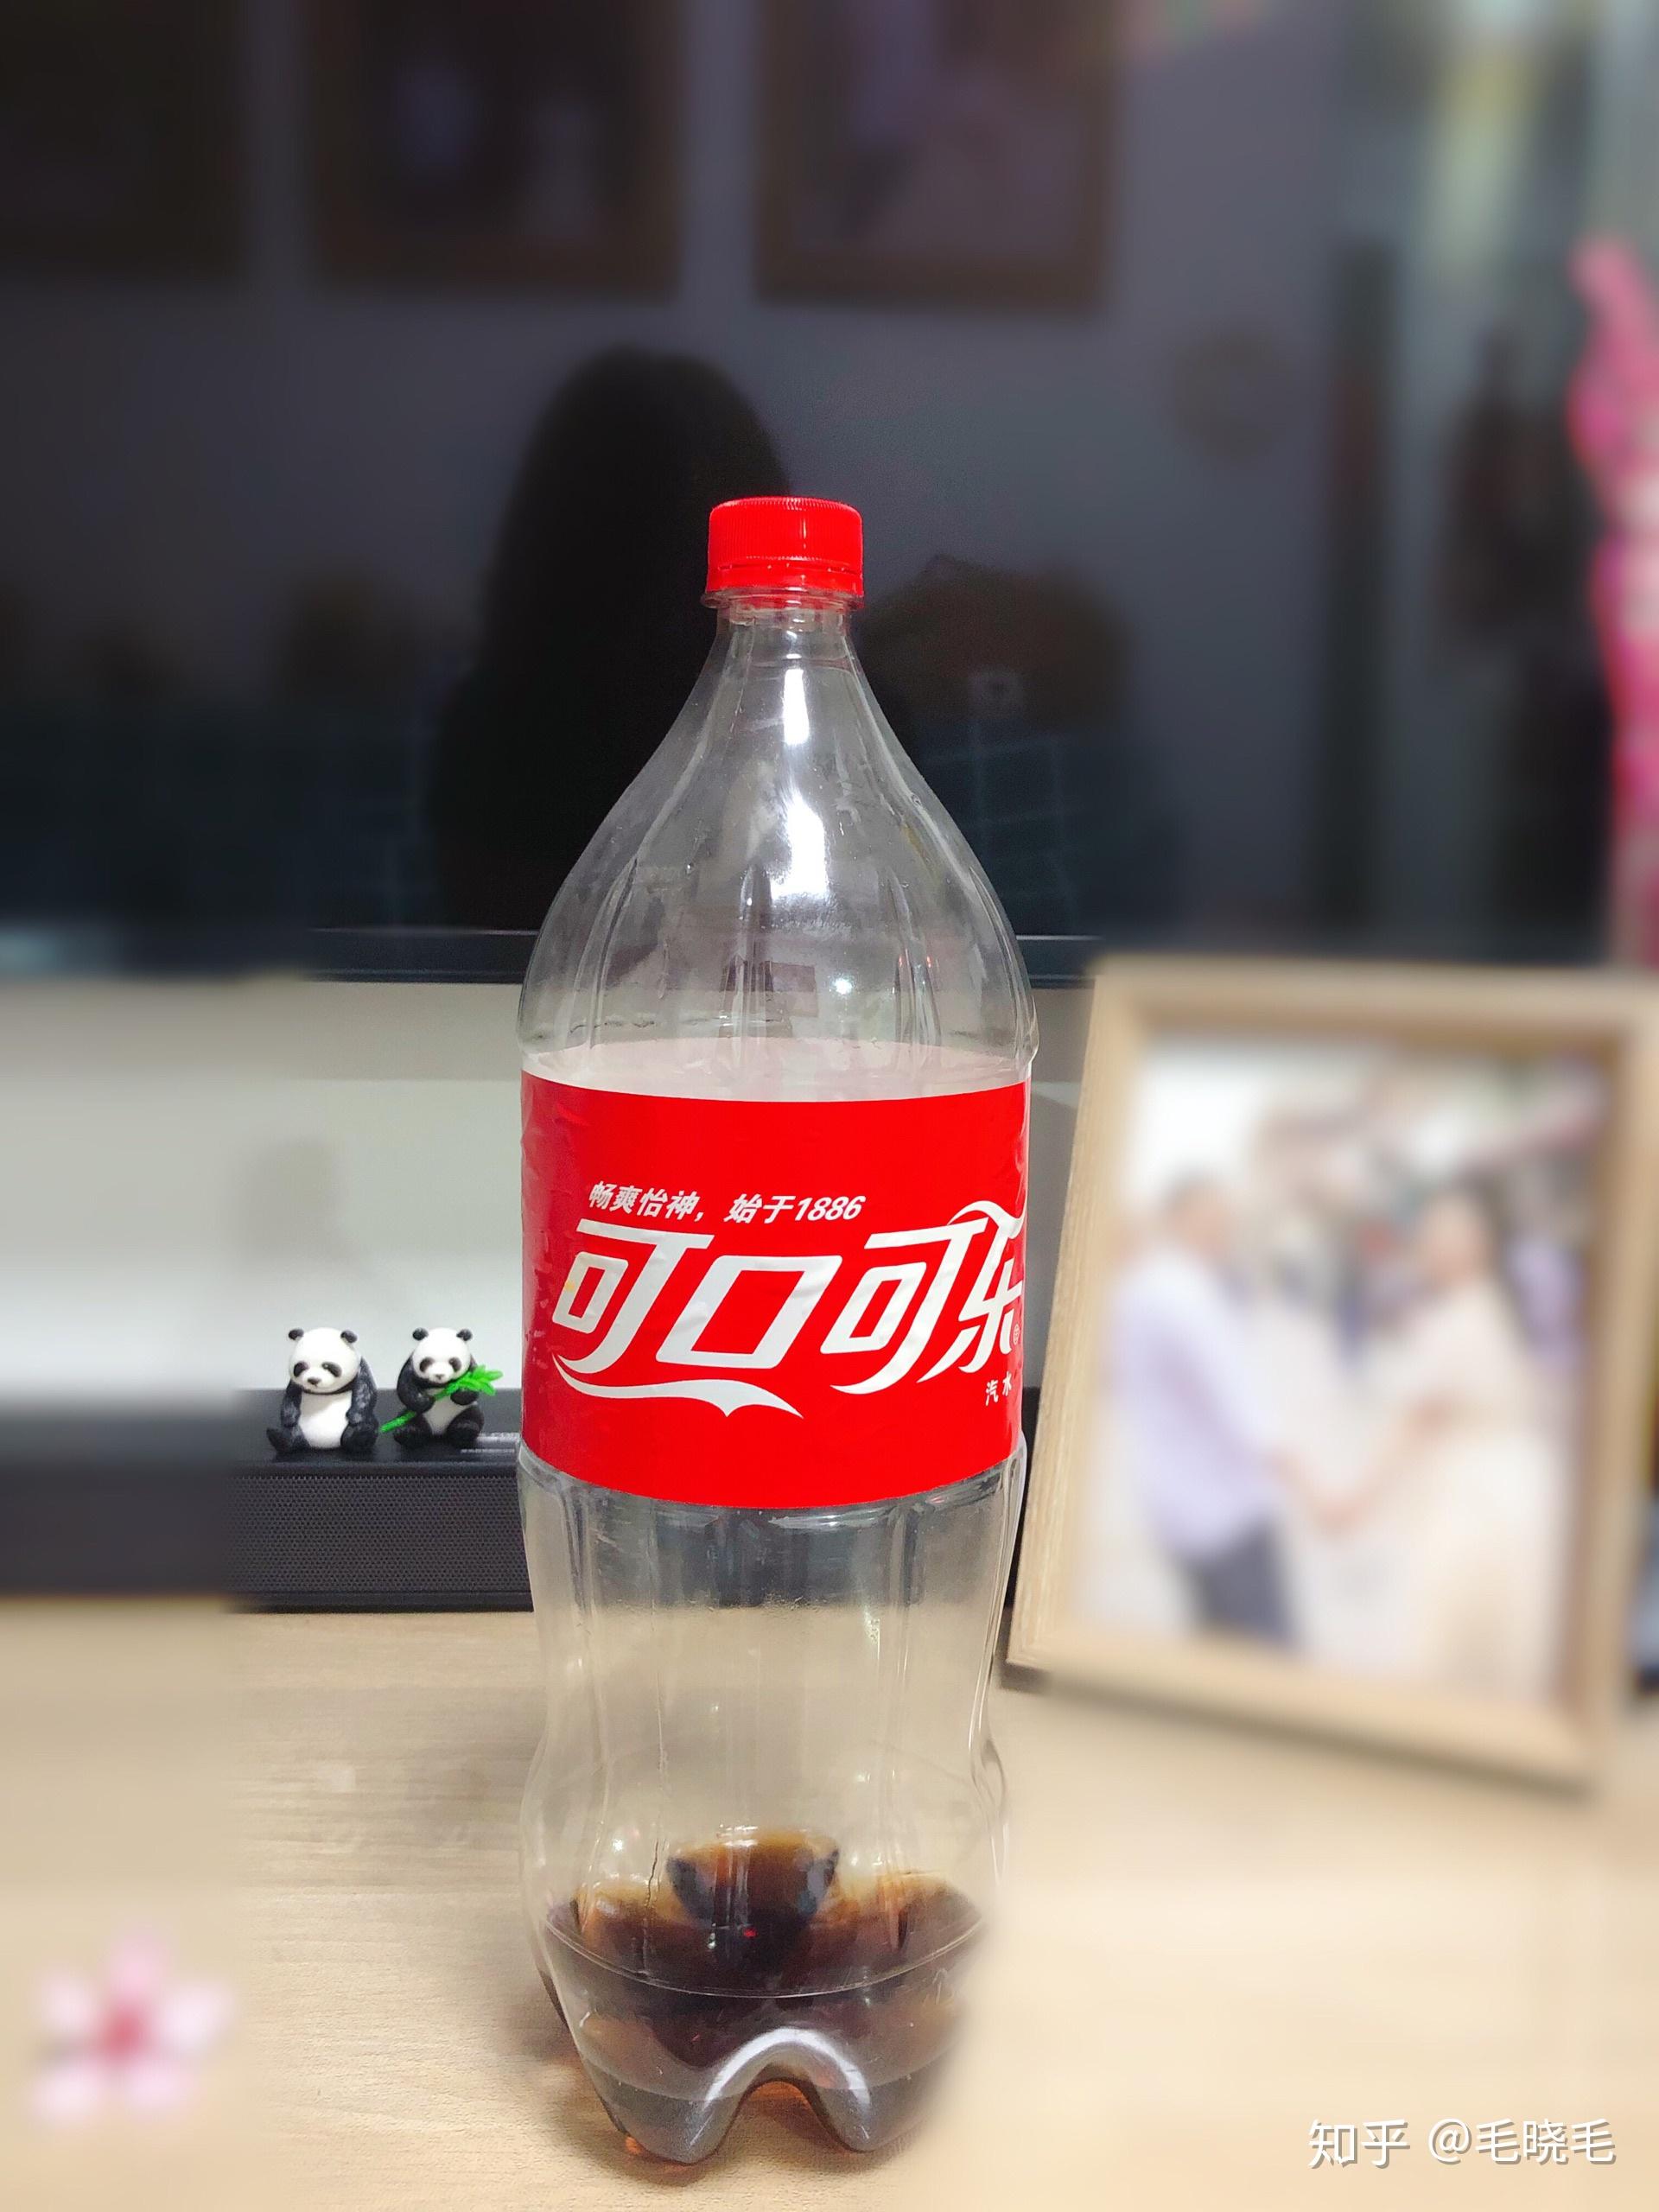 可口可乐瓶收藏-饮料瓶-7788商城__七七八八商品交易平台(7788.com)